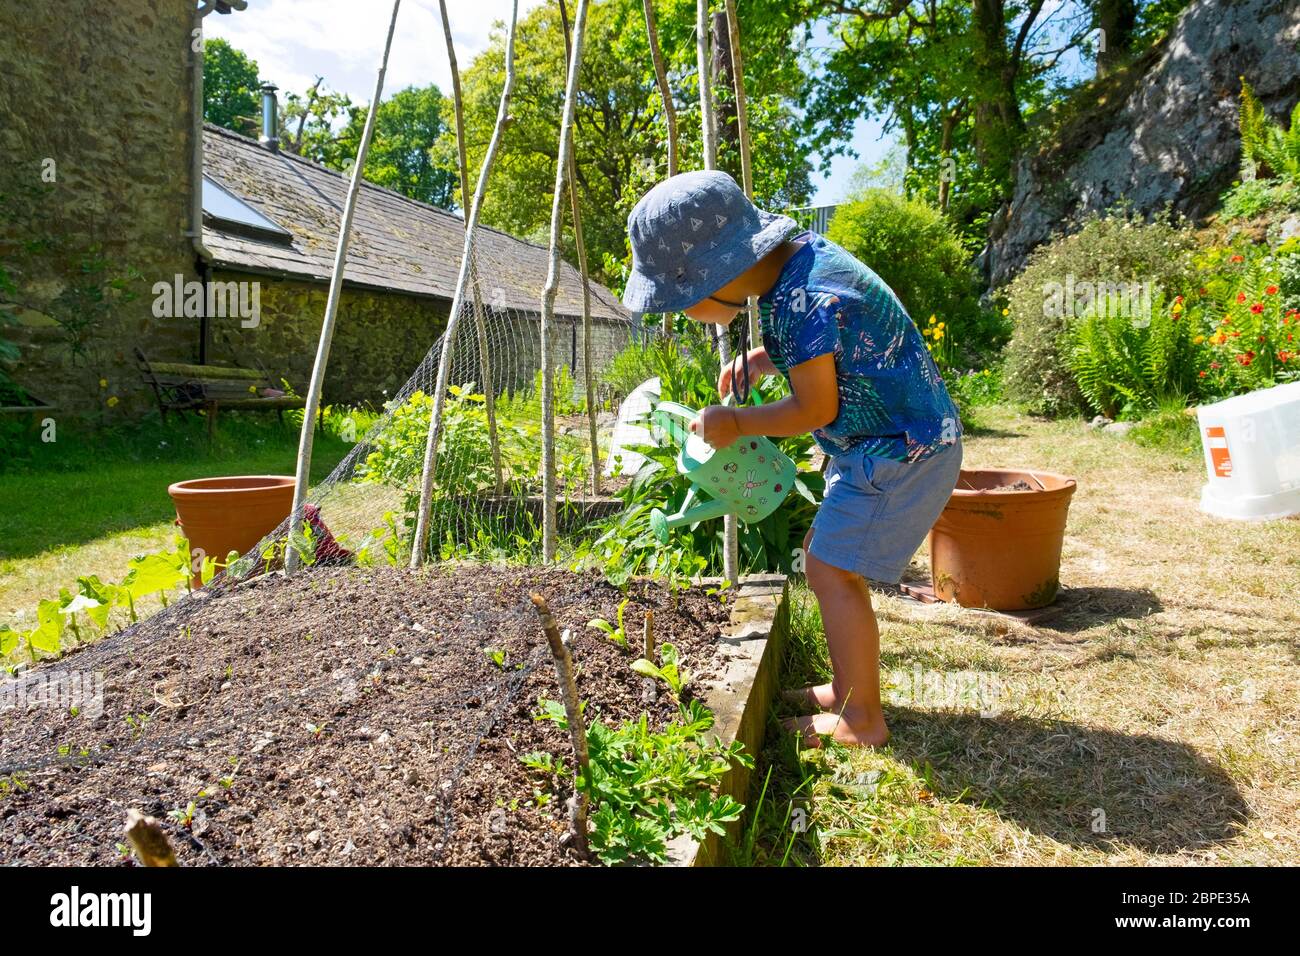 Enfant petit garçon 3 portant un chapeau de soleil utilisant un arrosoir pour verser de l'eau sur les semis dans un jardin sec de mai au printemps Royaume-Uni GRANDE-Bretagne KATHY DEWITT Banque D'Images